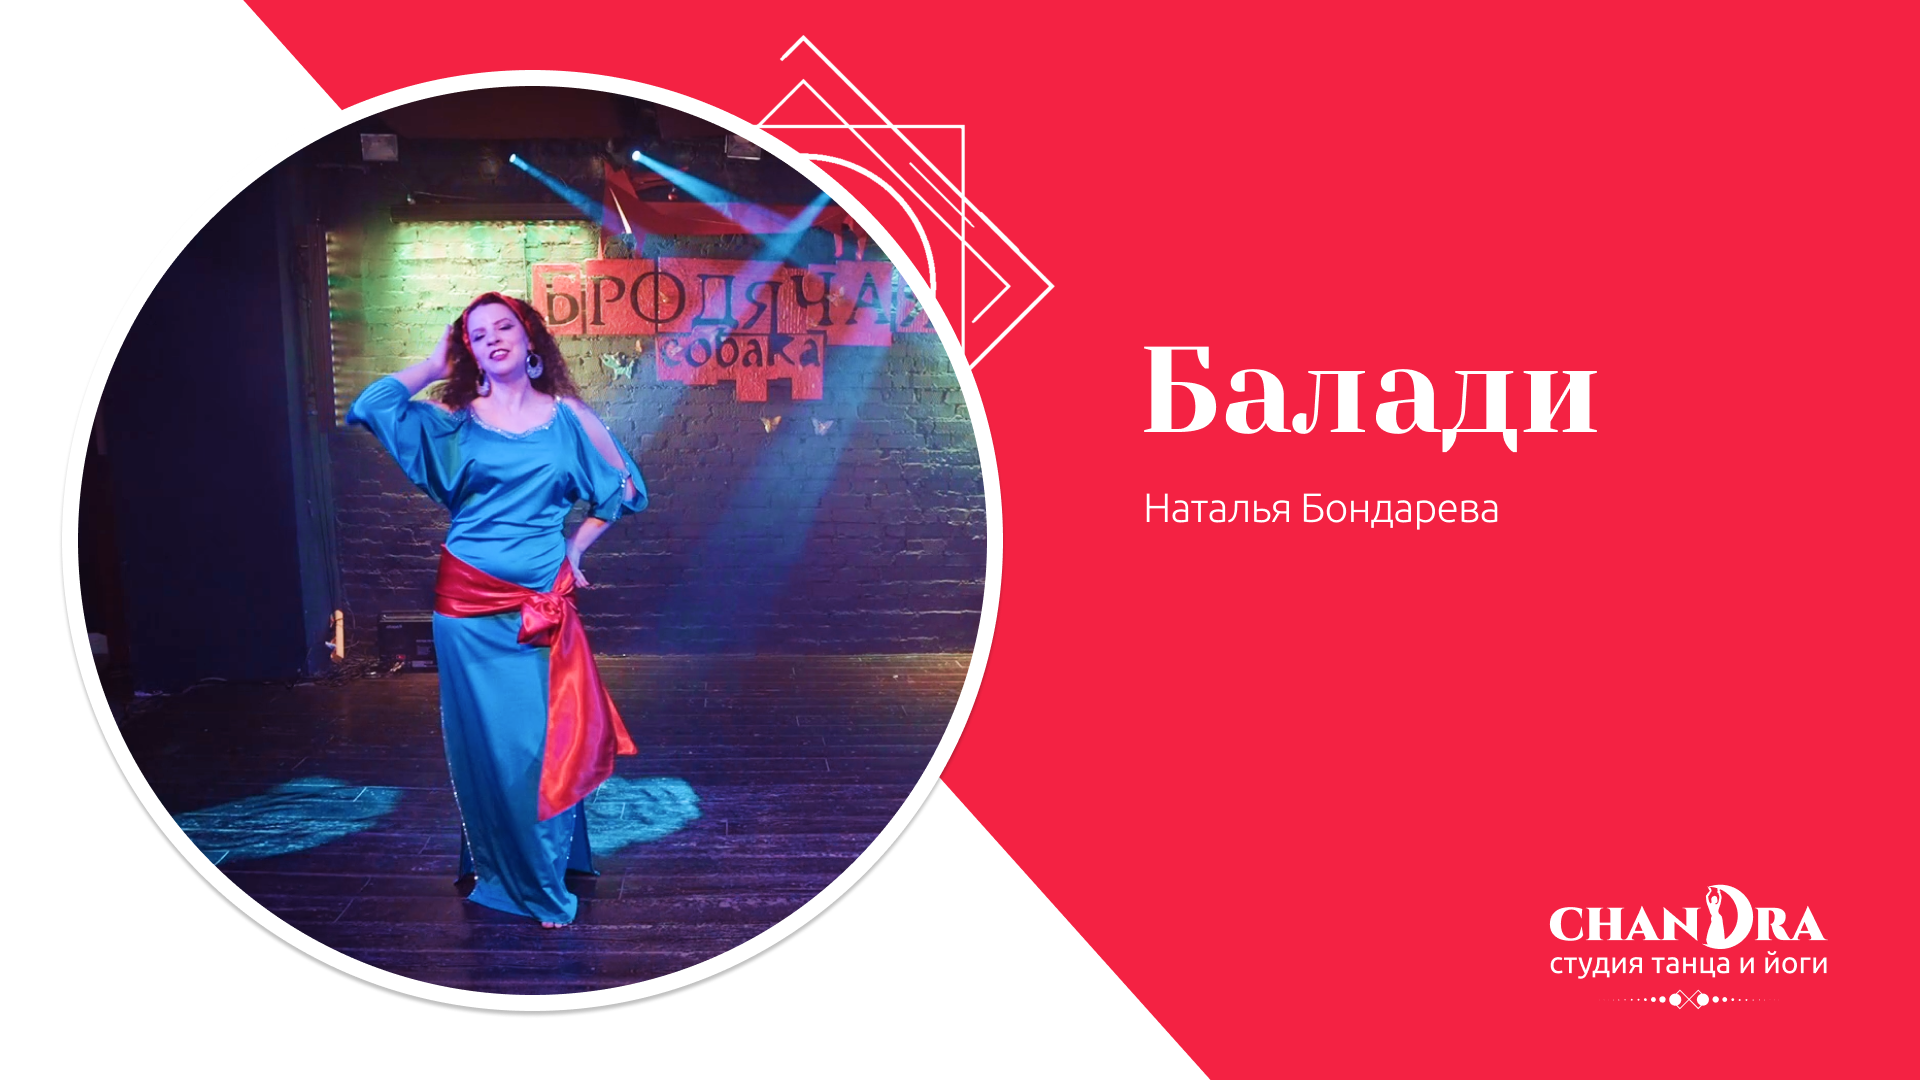 Студия танца и йоги в Новосибирске Chandra. Отчетный концерт 2024: Балади, Бондарева Наталья